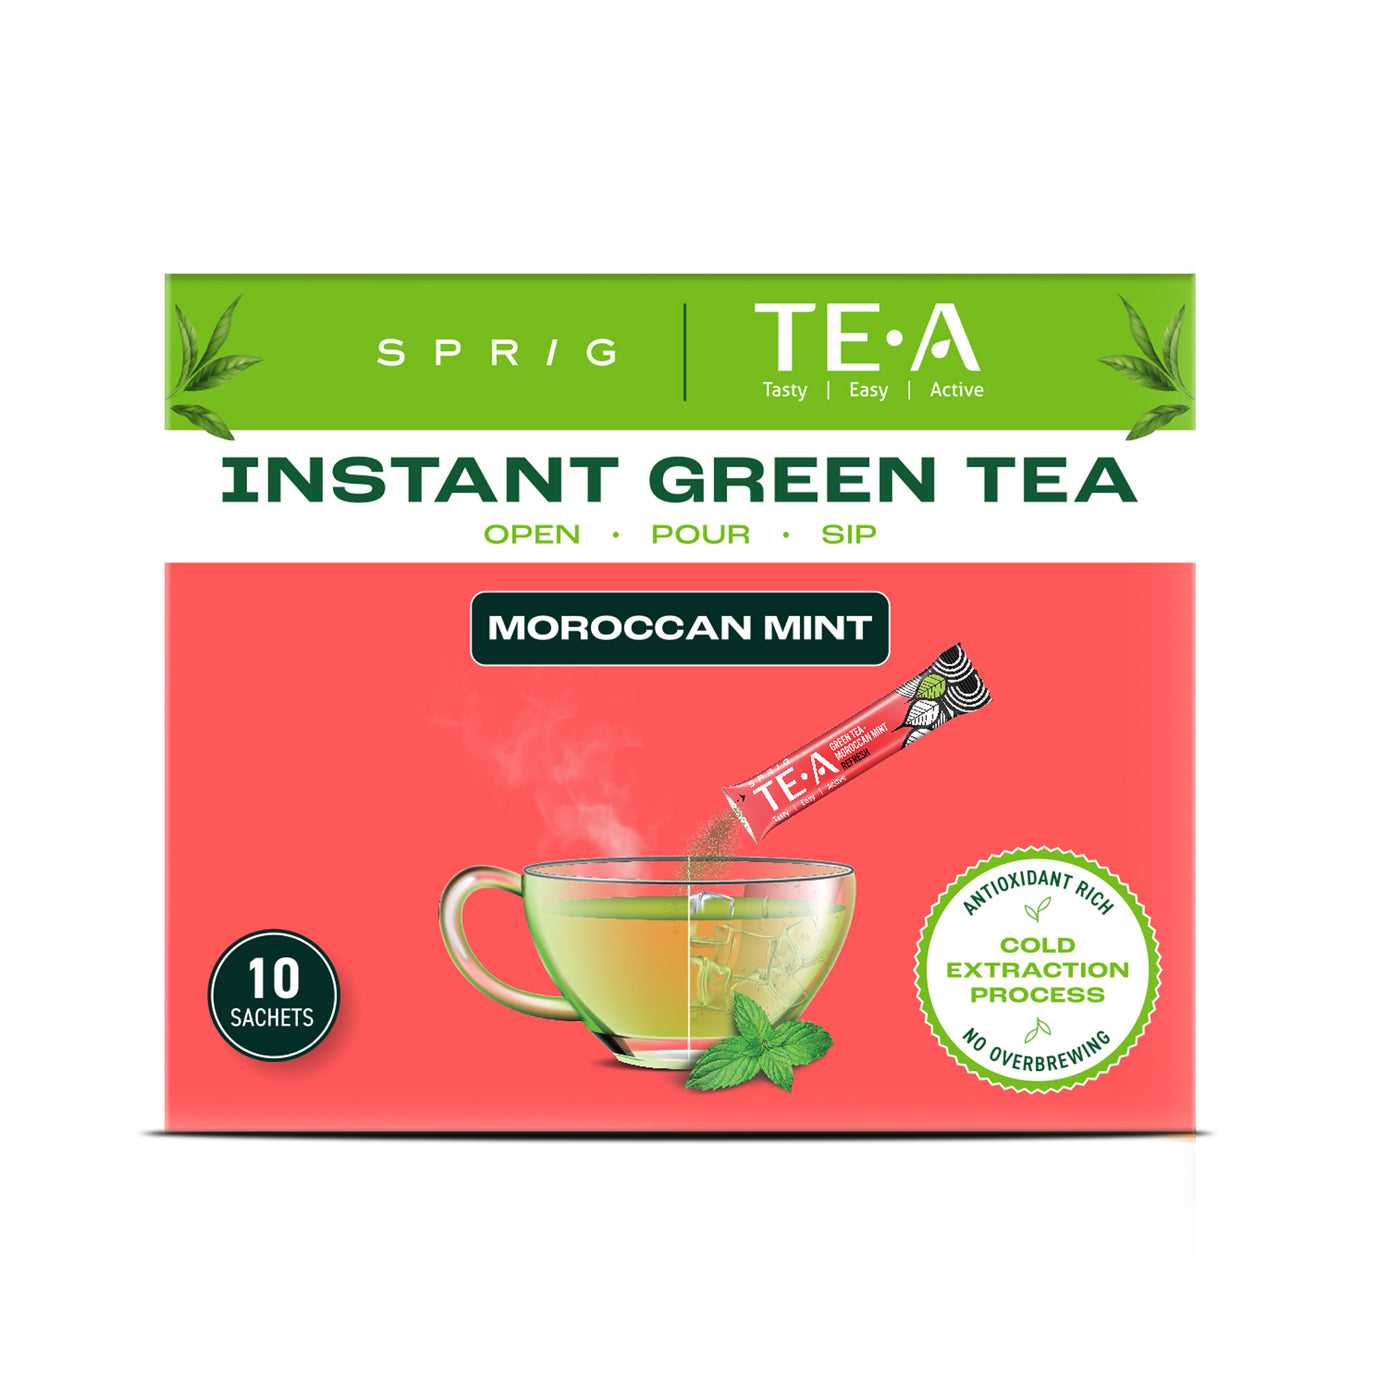 
                  
                    TE.A Instant Green Tea & Moroccan Mint
                  
                